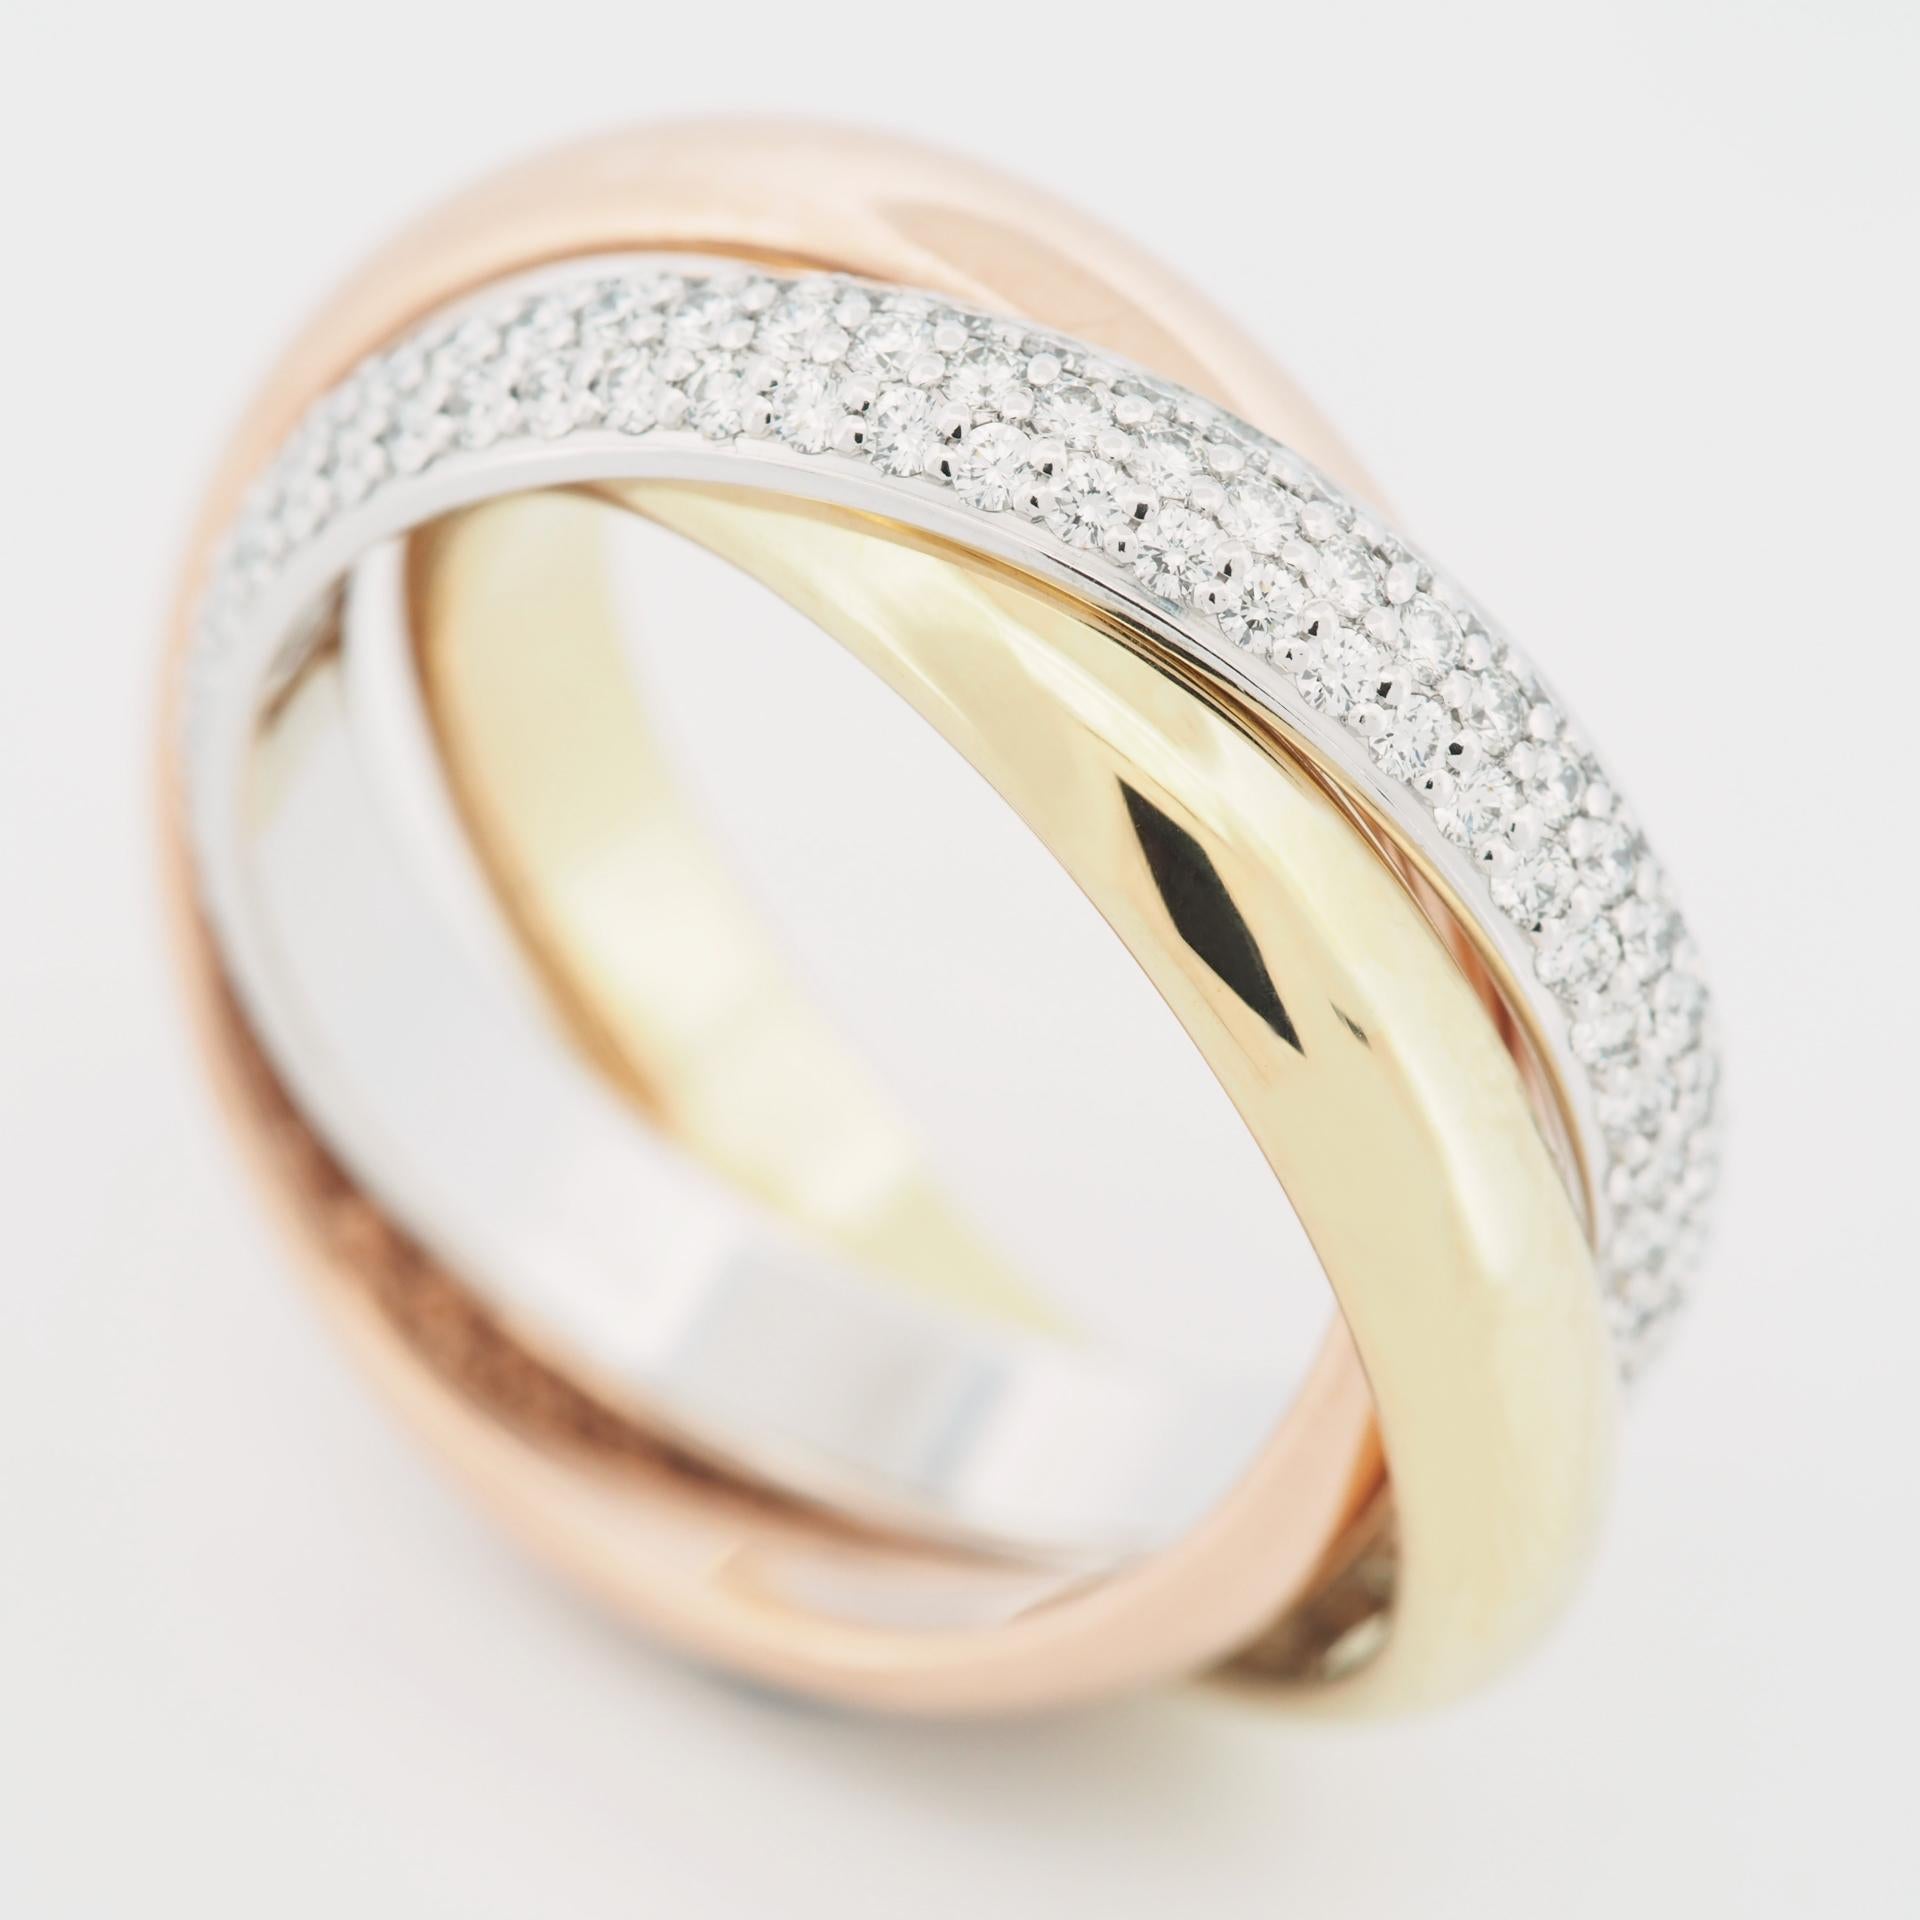 Artikel: Authentischer Cartier Trinity Diamanten Ring 
Steine: Diamant (Dies ist das ältere Modell mit ca. 1,0 - 1,4 Karat Diamanten)
Metall: 18K Gelb / Rose / Weißgold
Ring Größe: 56 US SIZE 7.75 UK SIZE P
Innendurchmesser:  18.00 mm
Messung:  4,0